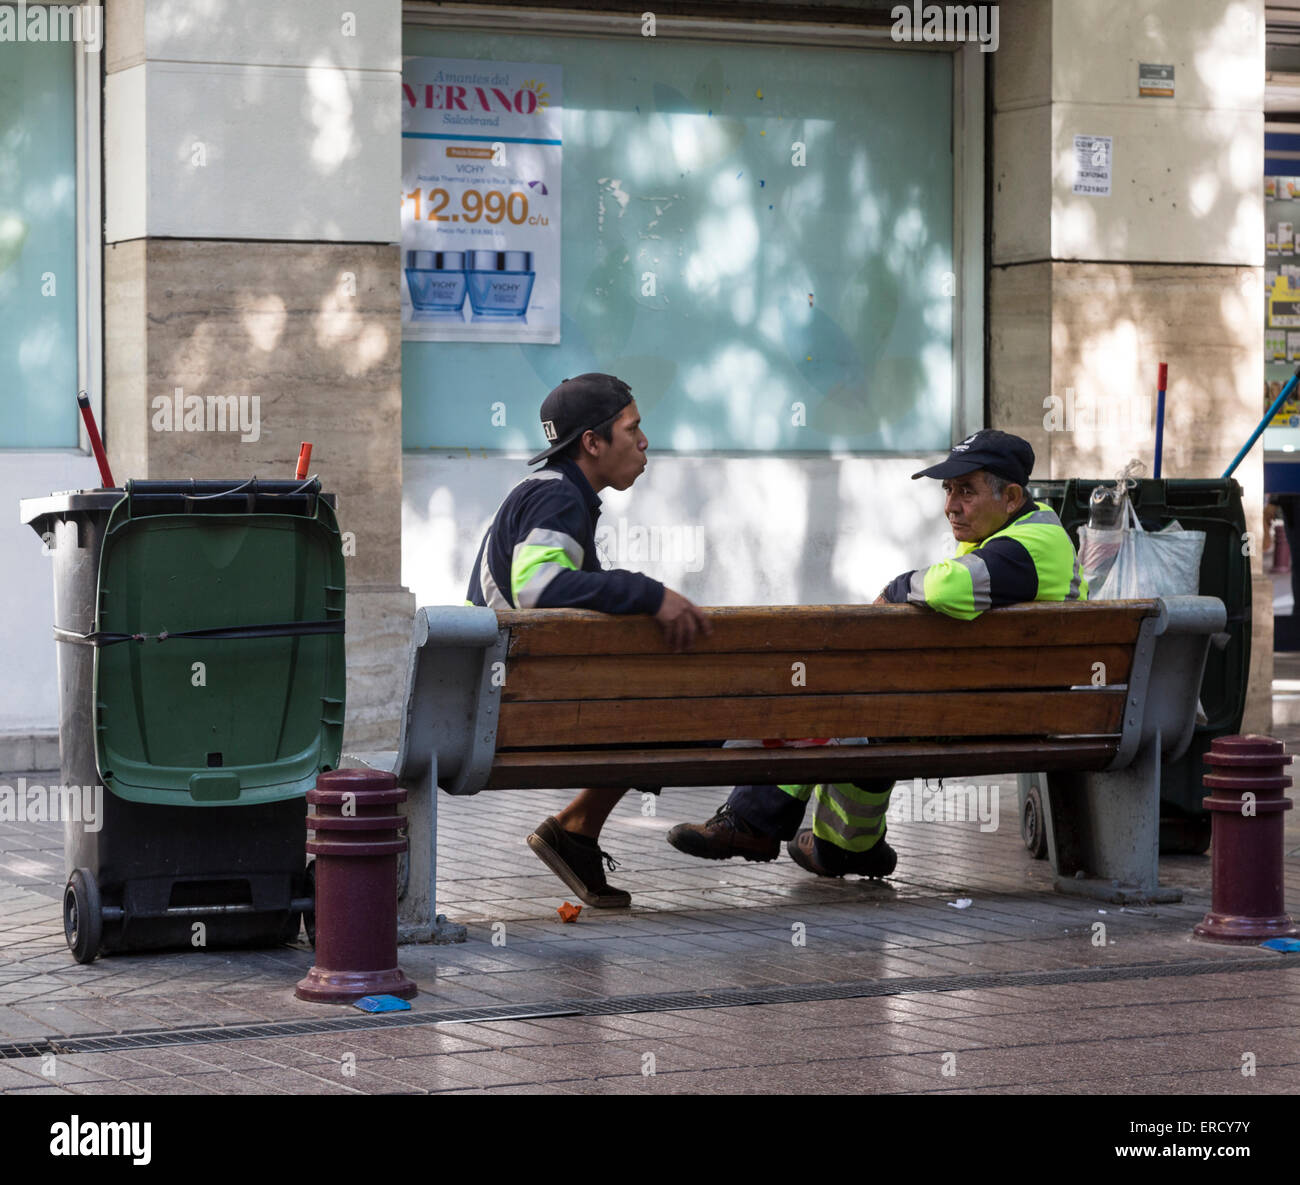 Les éboueurs au repos, centre-ville, Santiago, Chili Banque D'Images